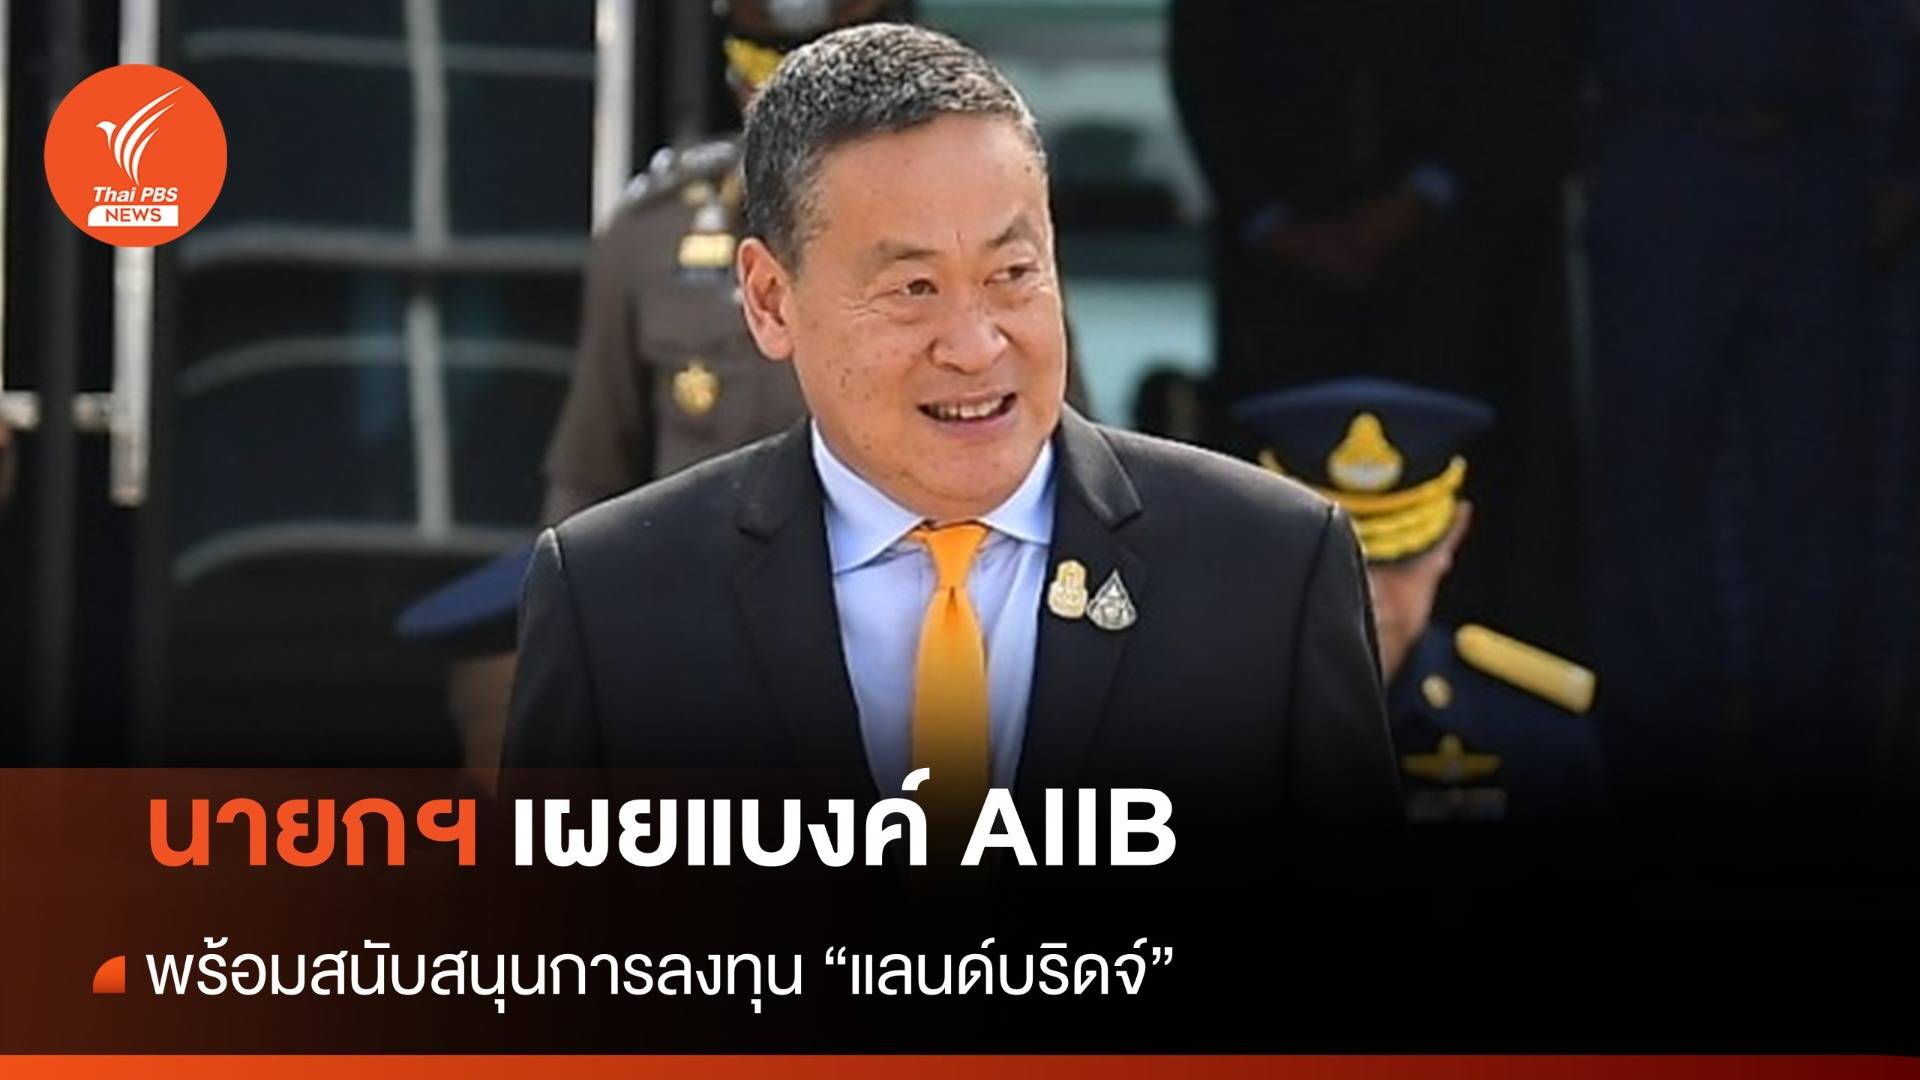  นายกฯ เผยแบงค์ AIIB พร้อมหนุนไทยลงทุน "แลนด์บริดจ์"